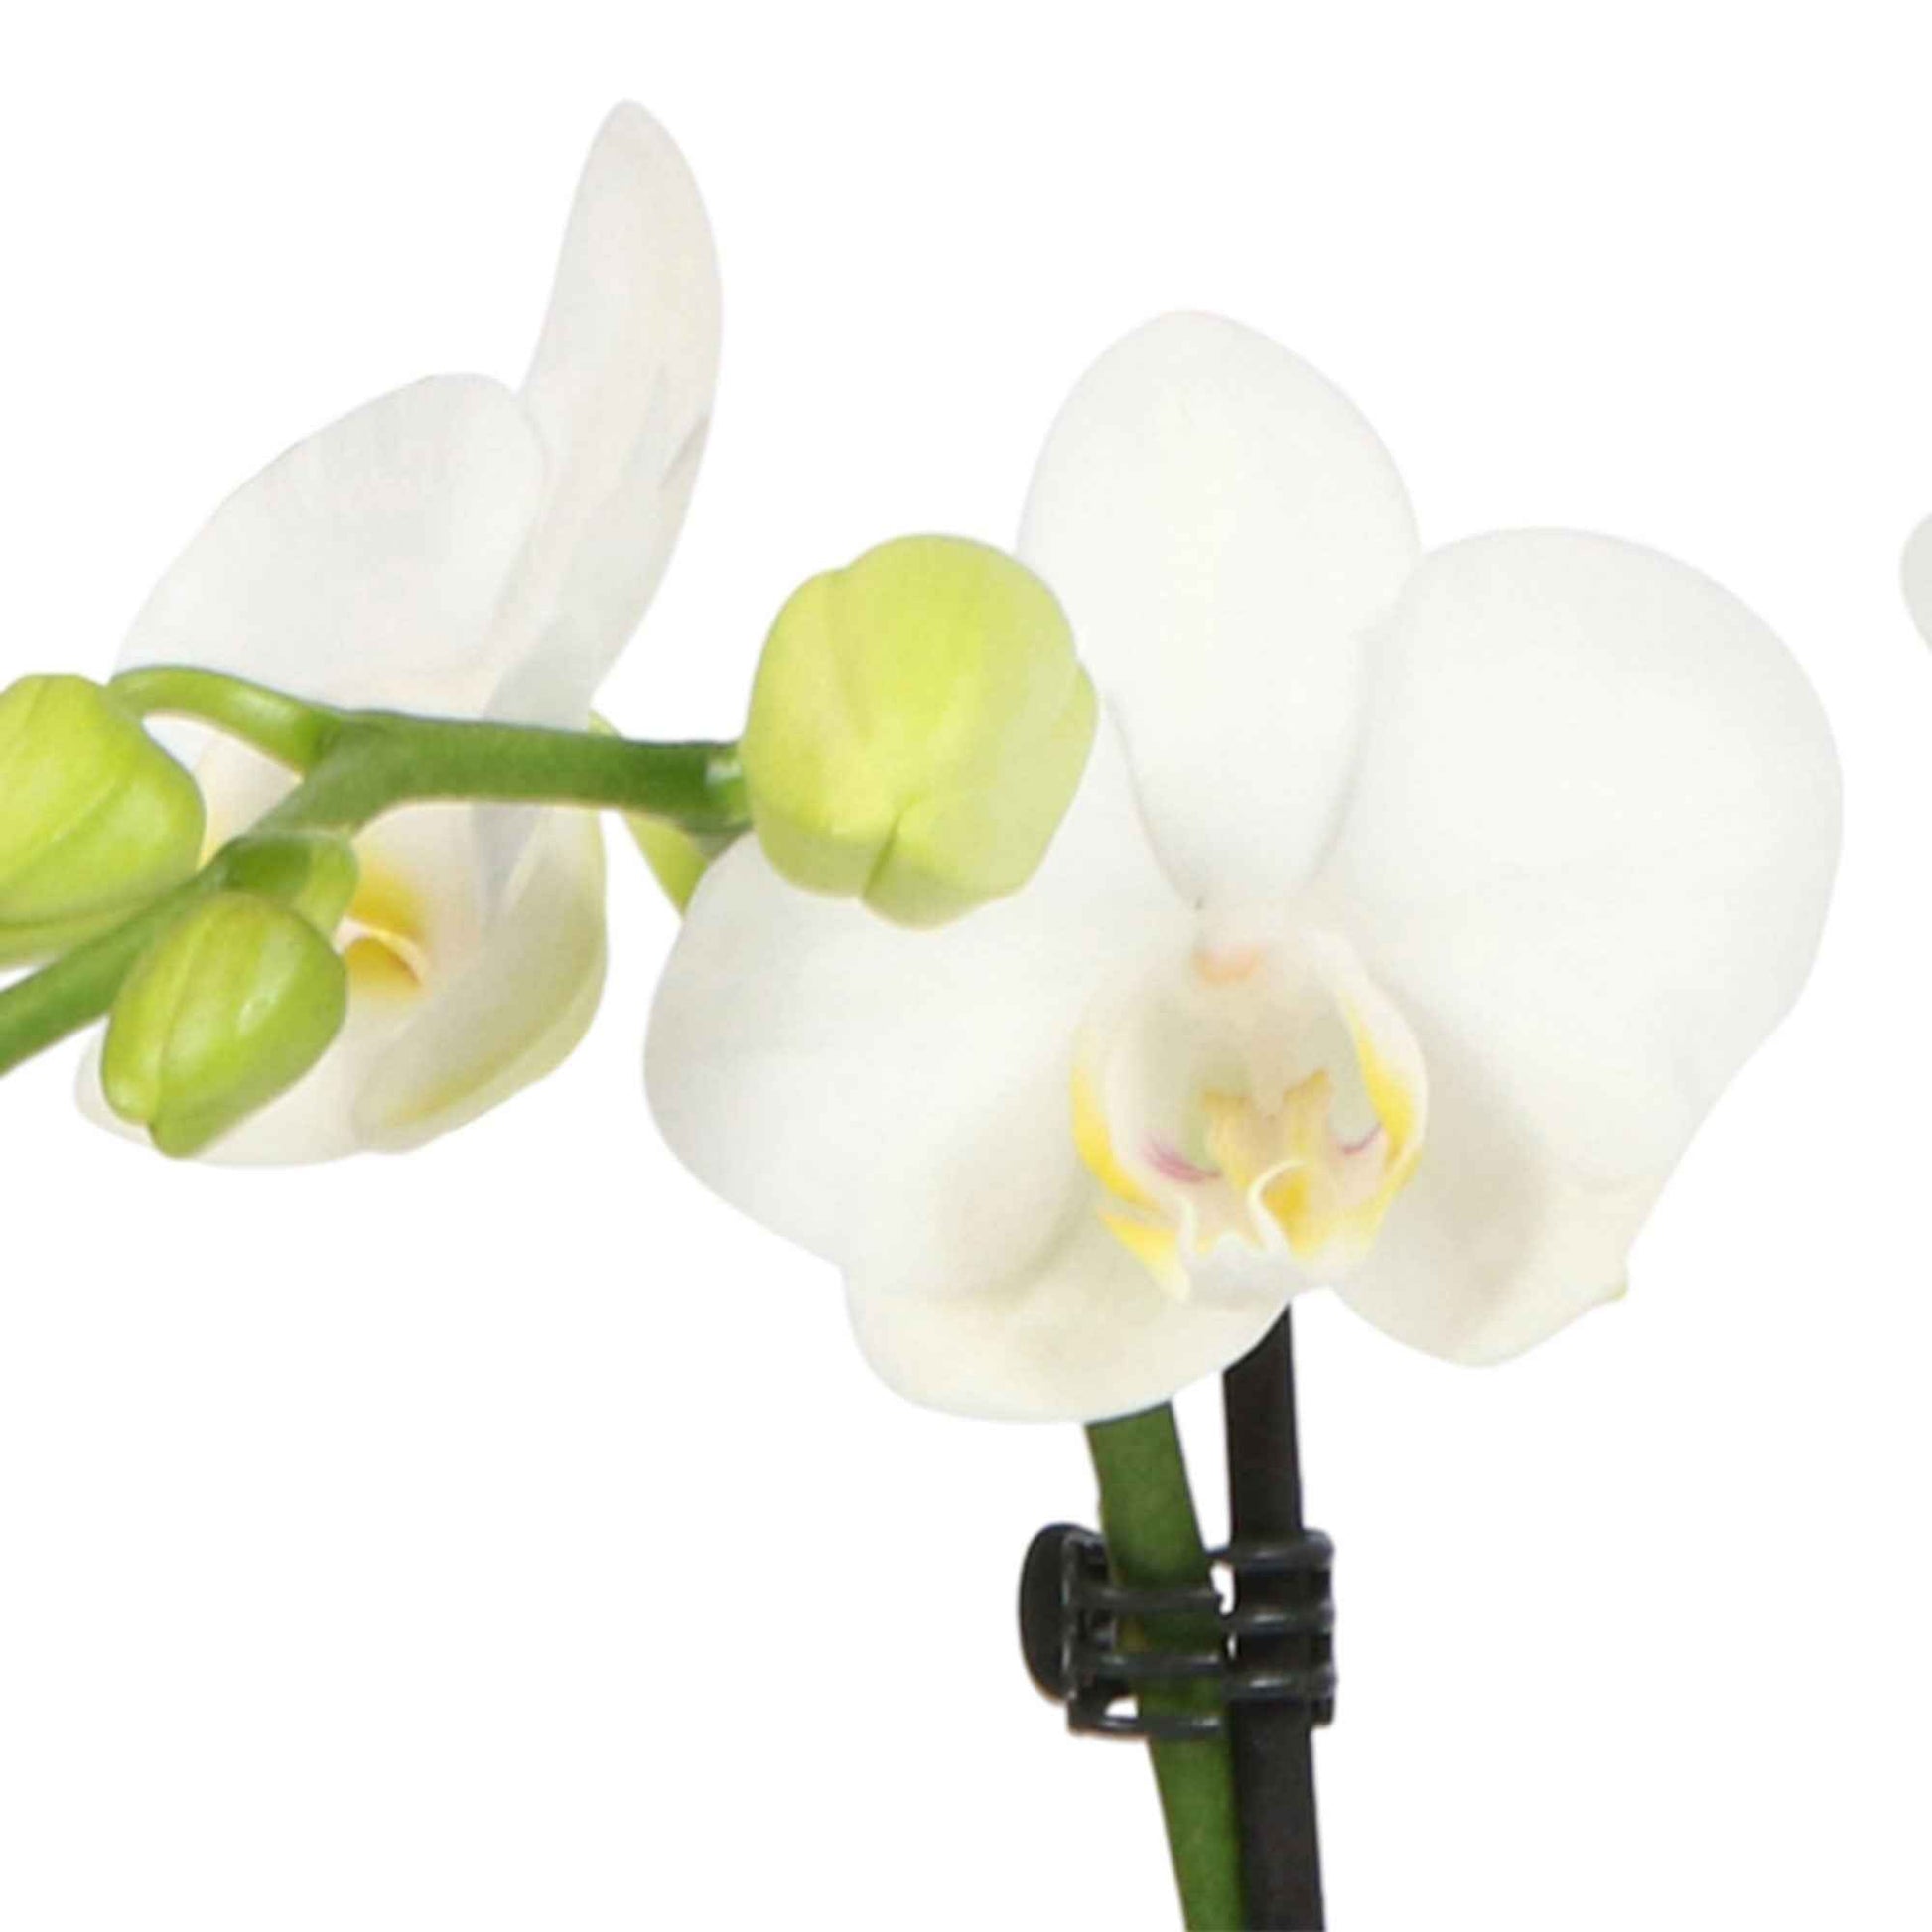 Vlinderorchidee Phalaenopsis Amabilis incl. sierpot grijs - Binnenplant in pot cadeau